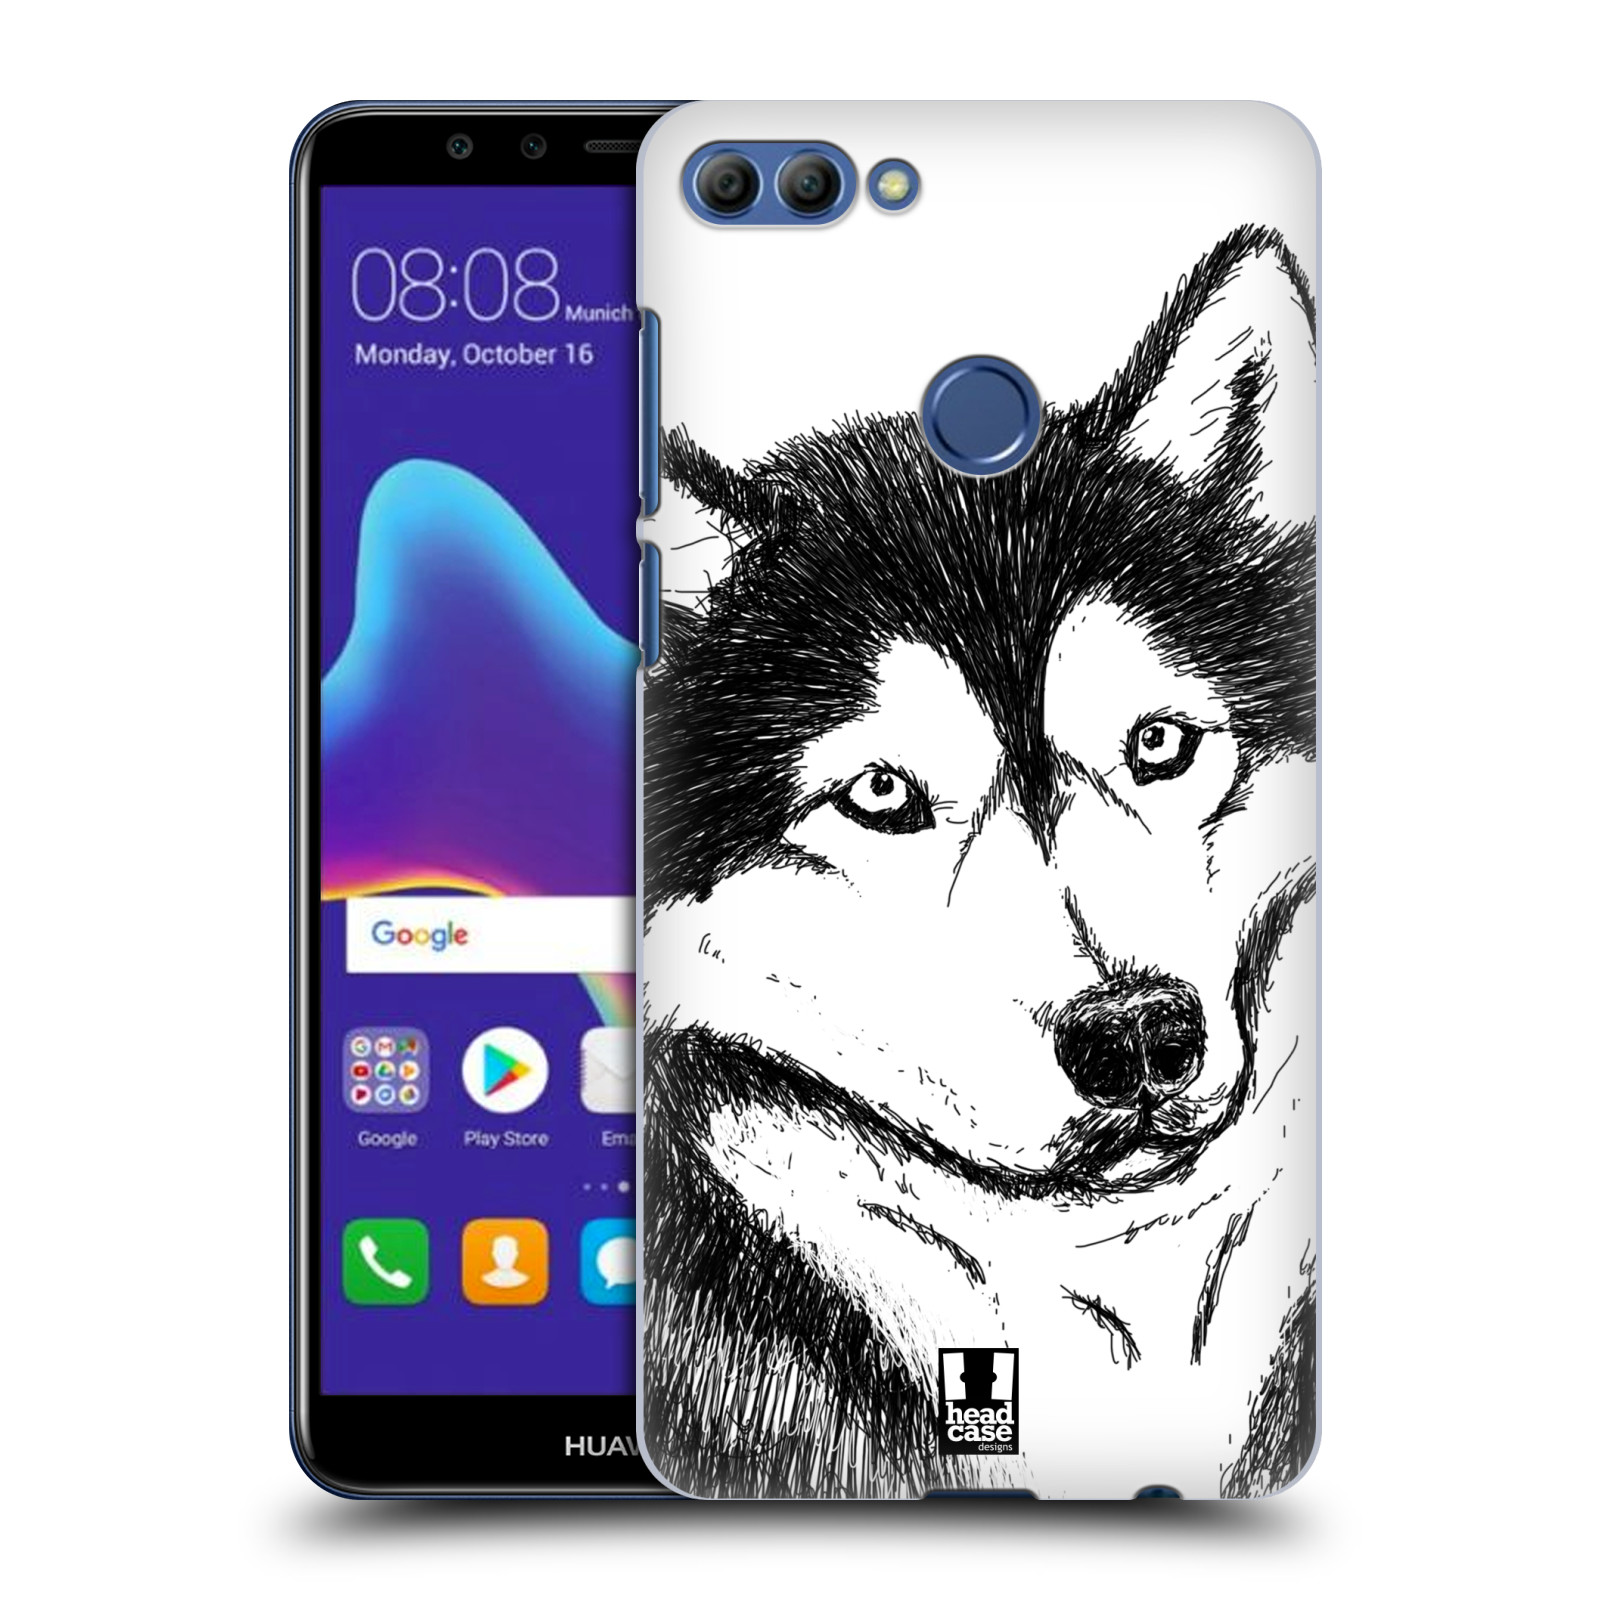 HEAD CASE plastový obal na mobil Huawei Y9 2018 vzor Kreslená zvířátka černá a bílá pes husky